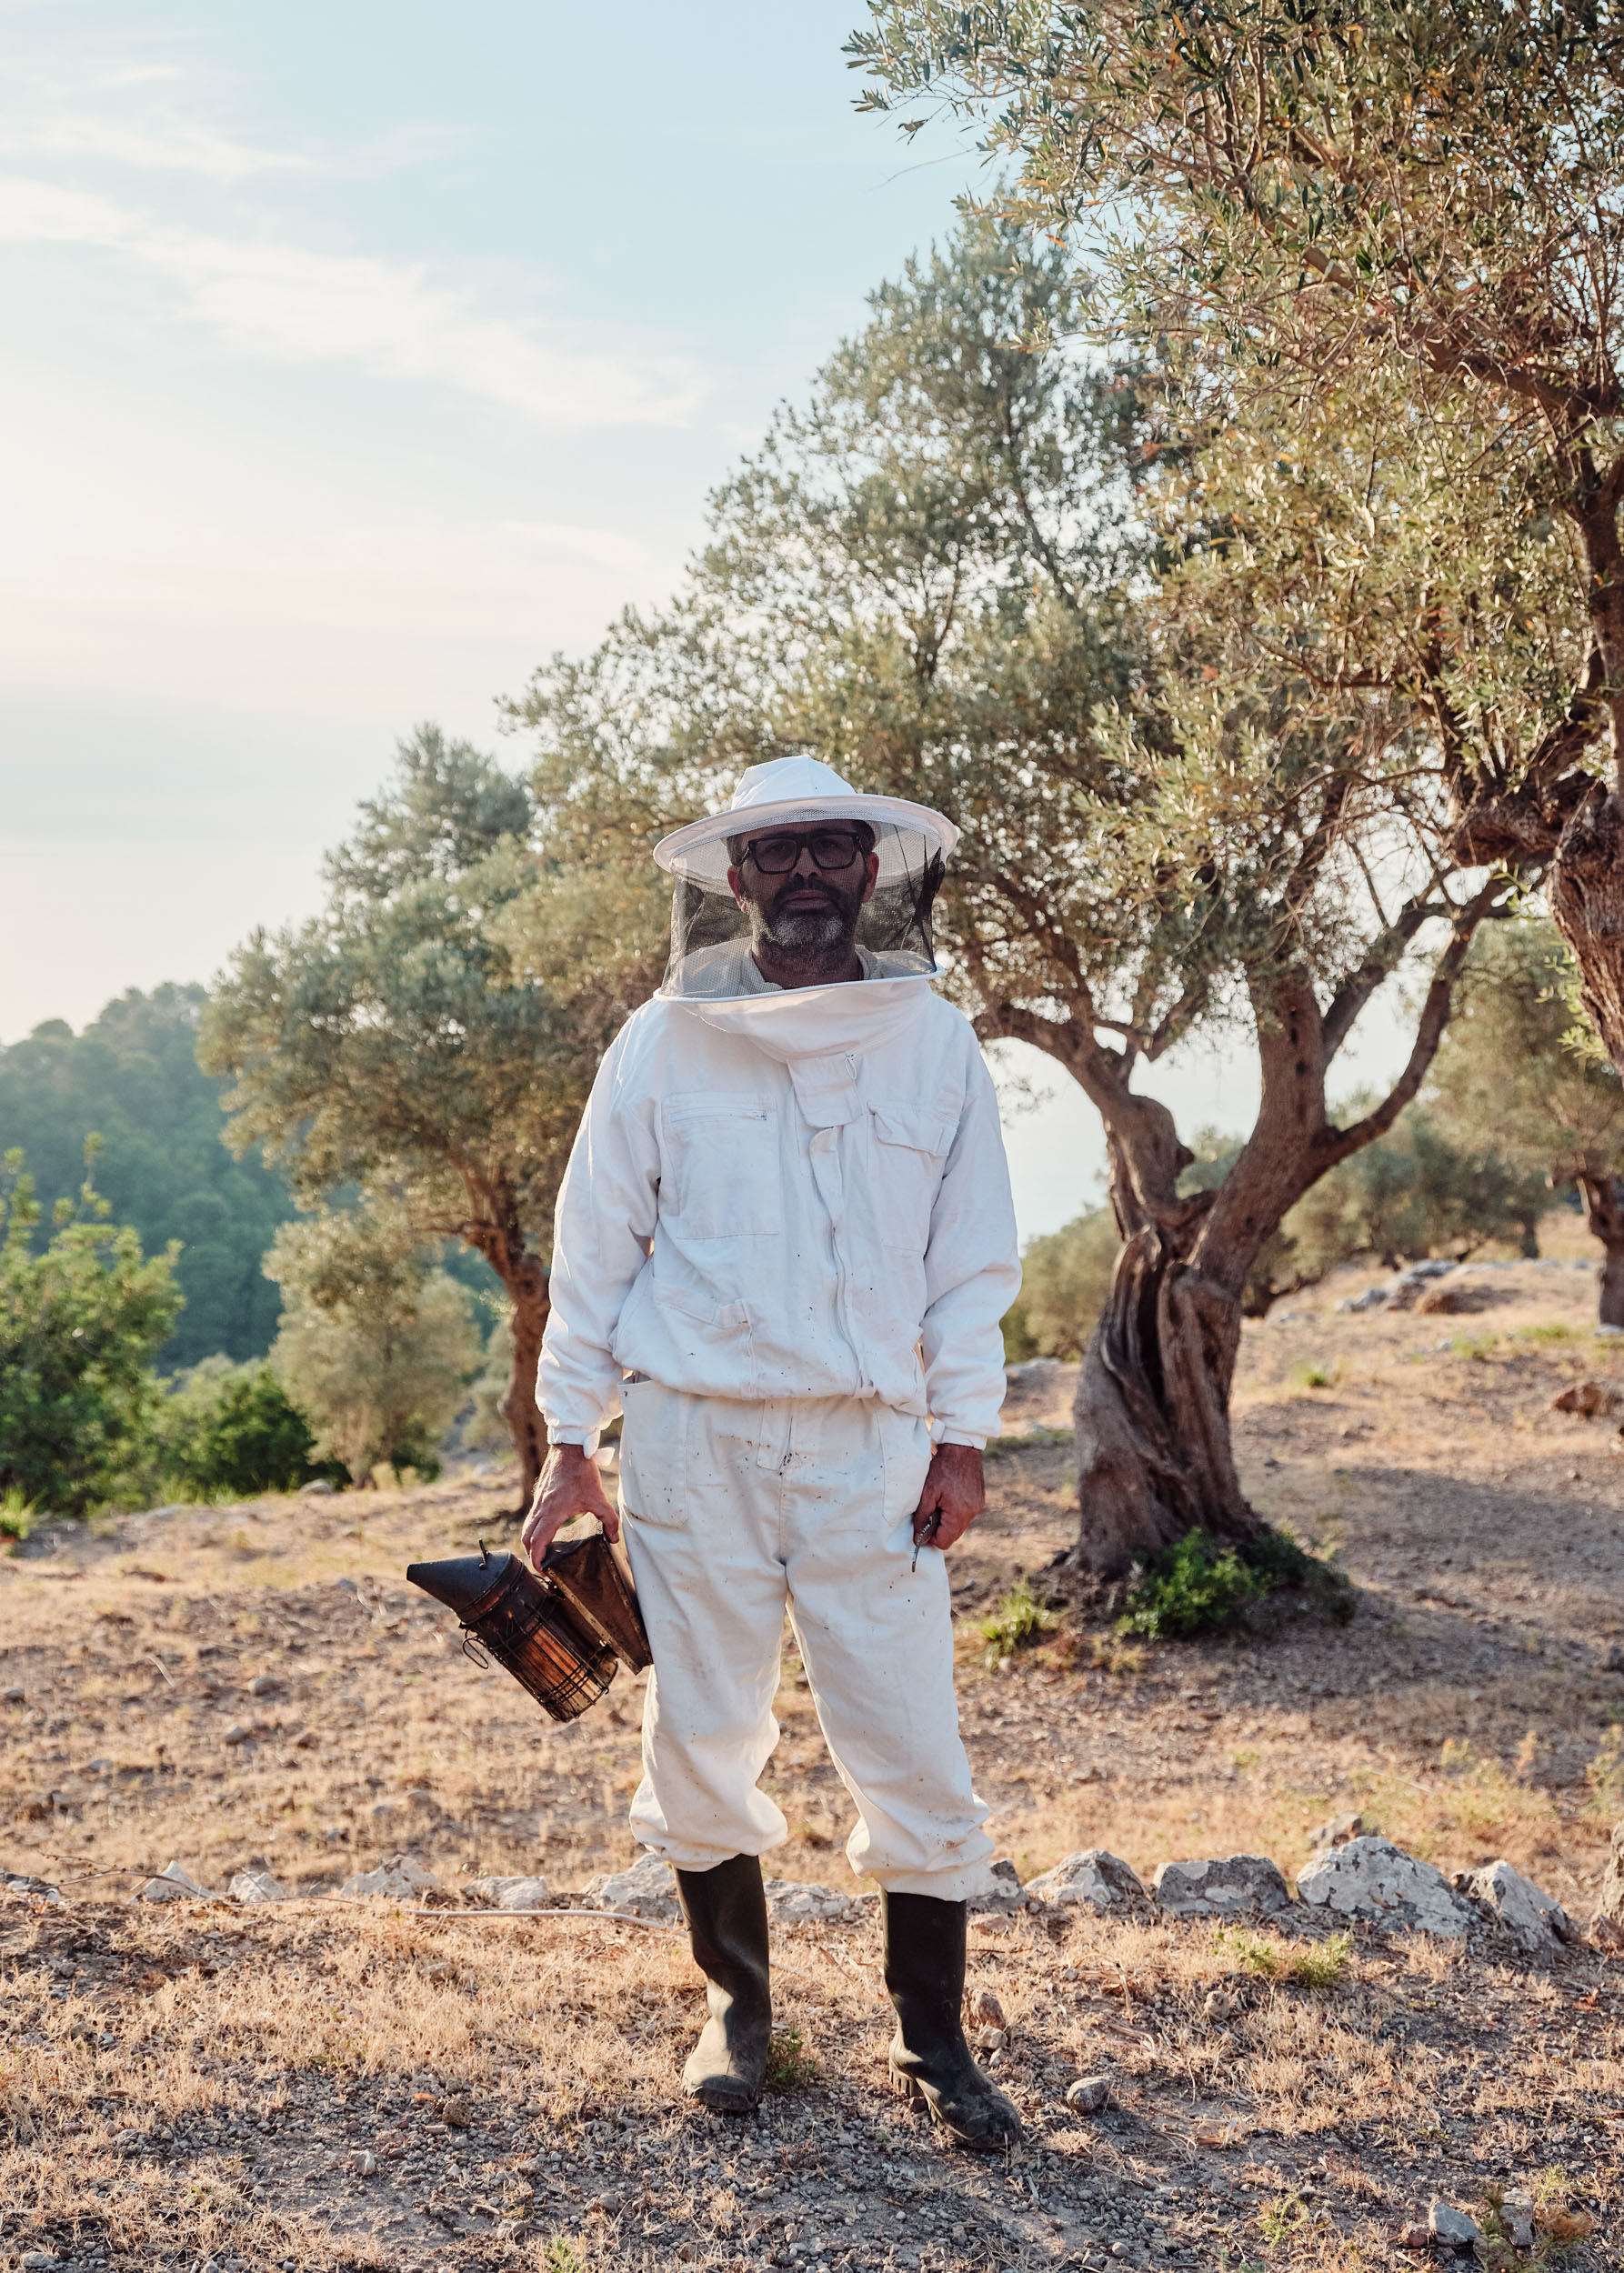 Mallorcan beekeeper, Mel Caramel